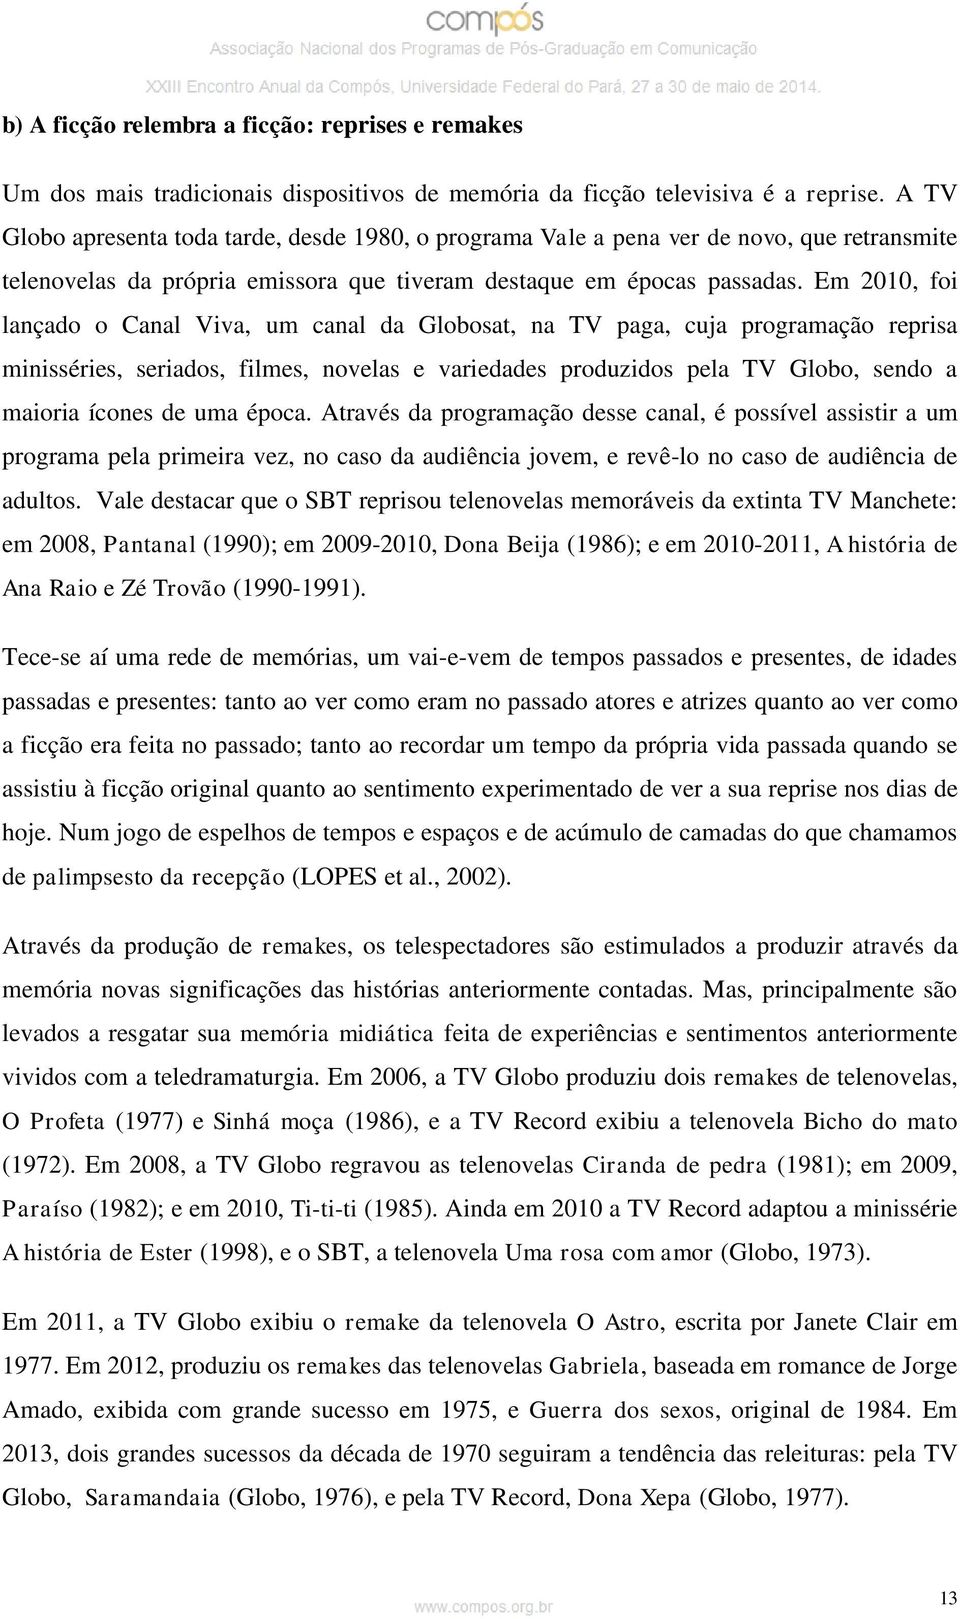 Em 2010, foi lançado o Canal Viva, um canal da Globosat, na TV paga, cuja programação reprisa minisséries, seriados, filmes, novelas e variedades produzidos pela TV Globo, sendo a maioria ícones de